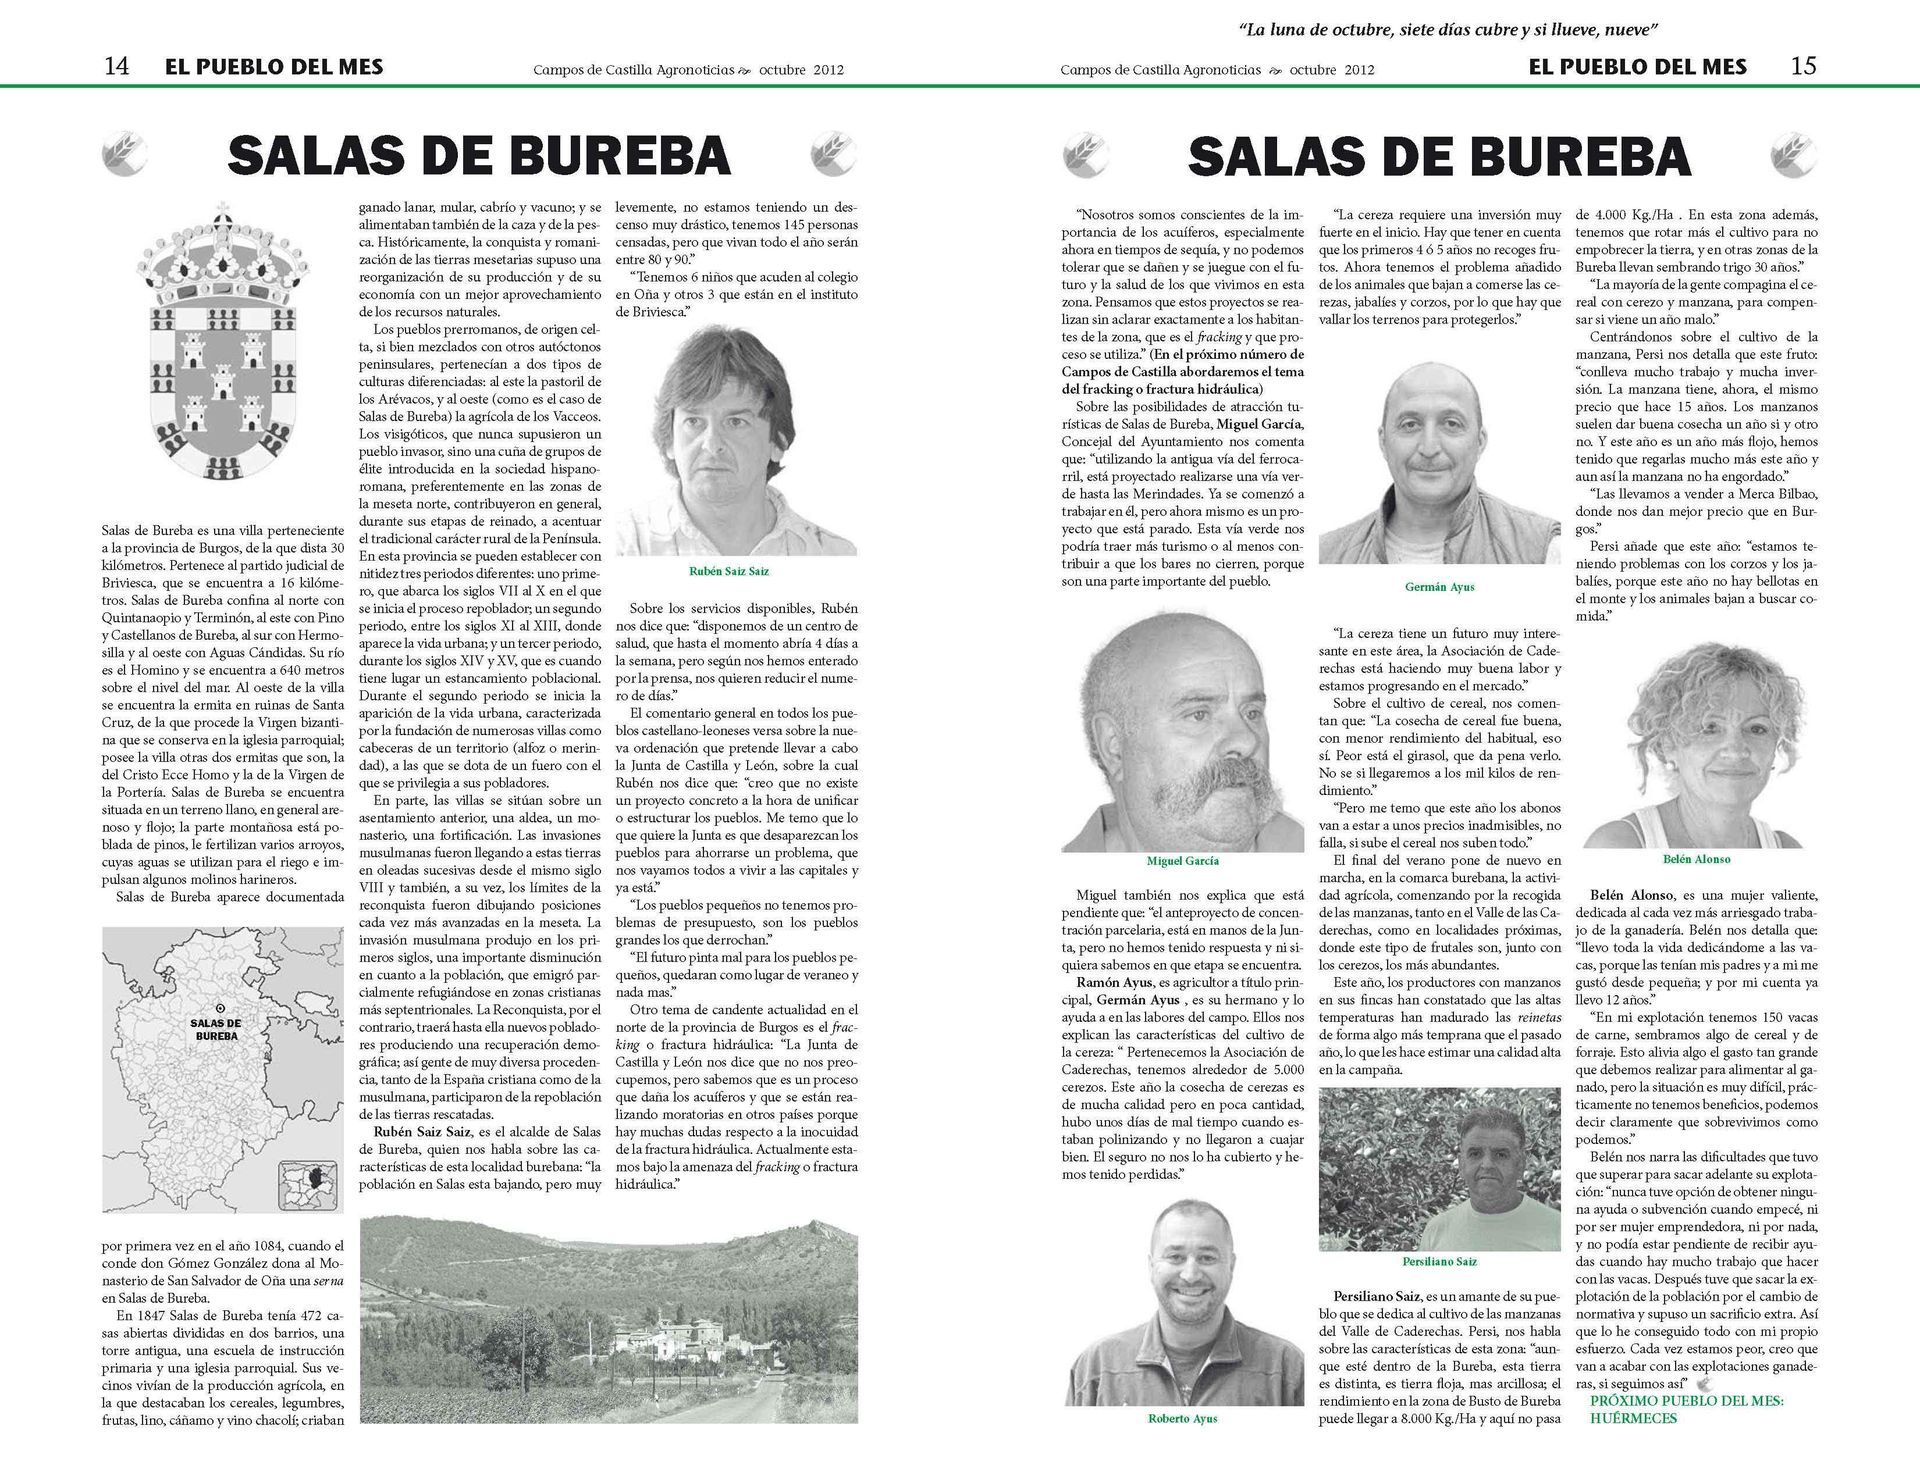 Pueblo del mes en la revista Campos de Castilla